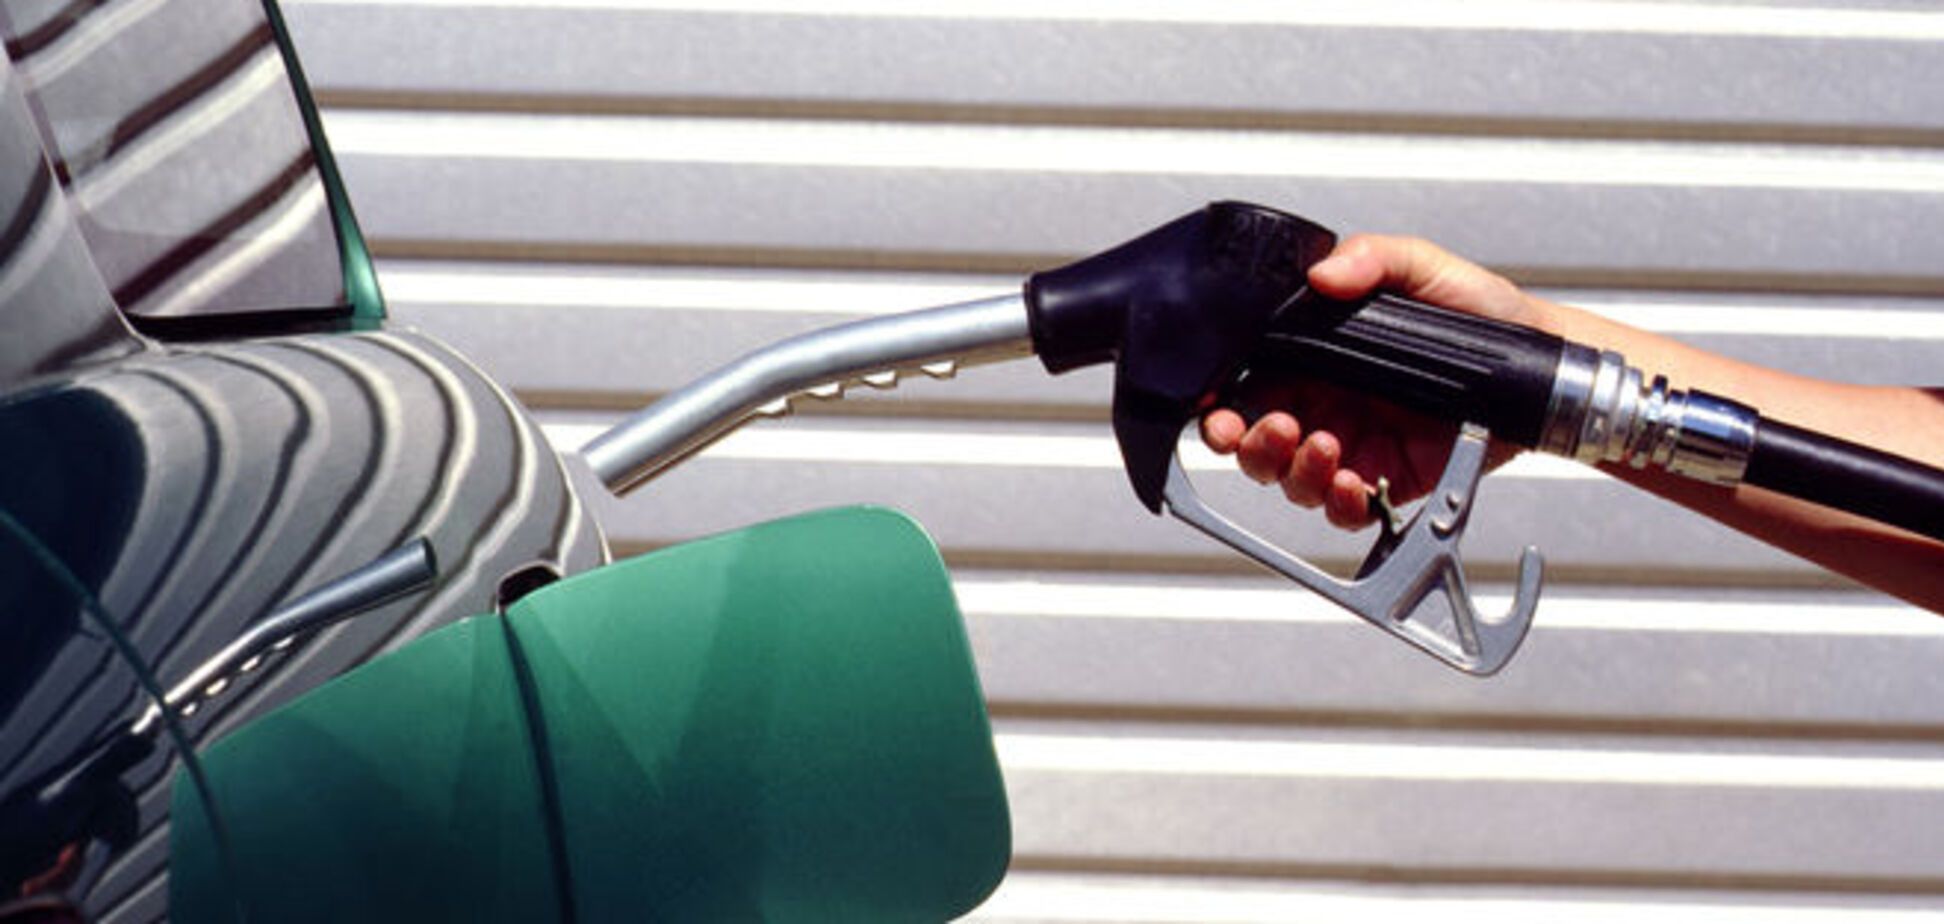 Динамика цен на бензин радует украинских автовладельцев